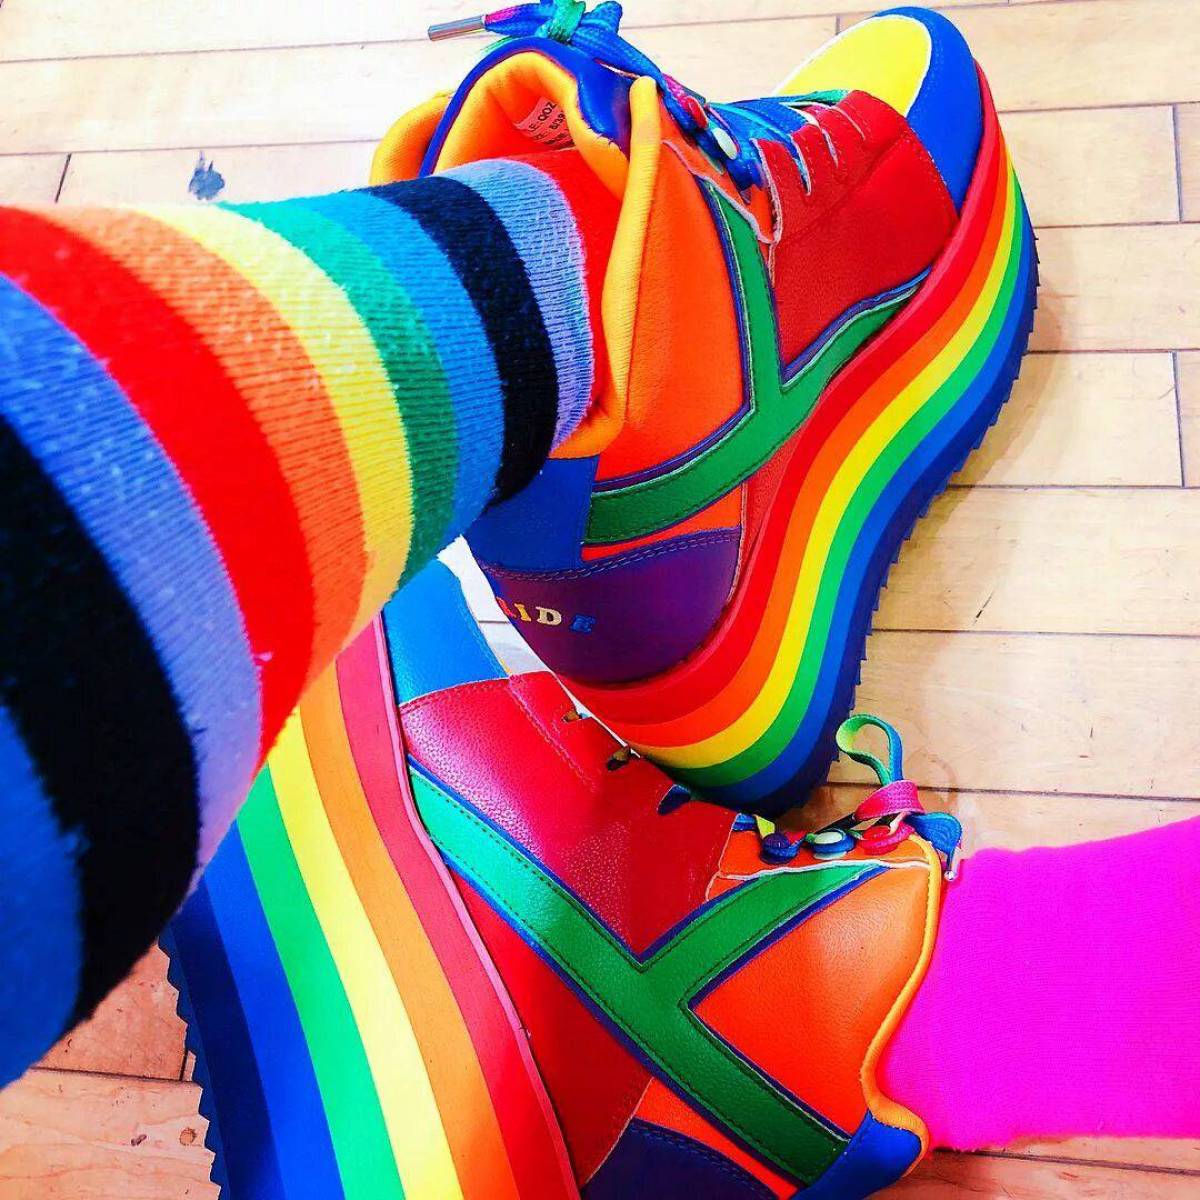 Недорогие цветные. Разноцветные ботинки. Радужные вещи. Цветные кроссовки. Яркая цветная одежда.